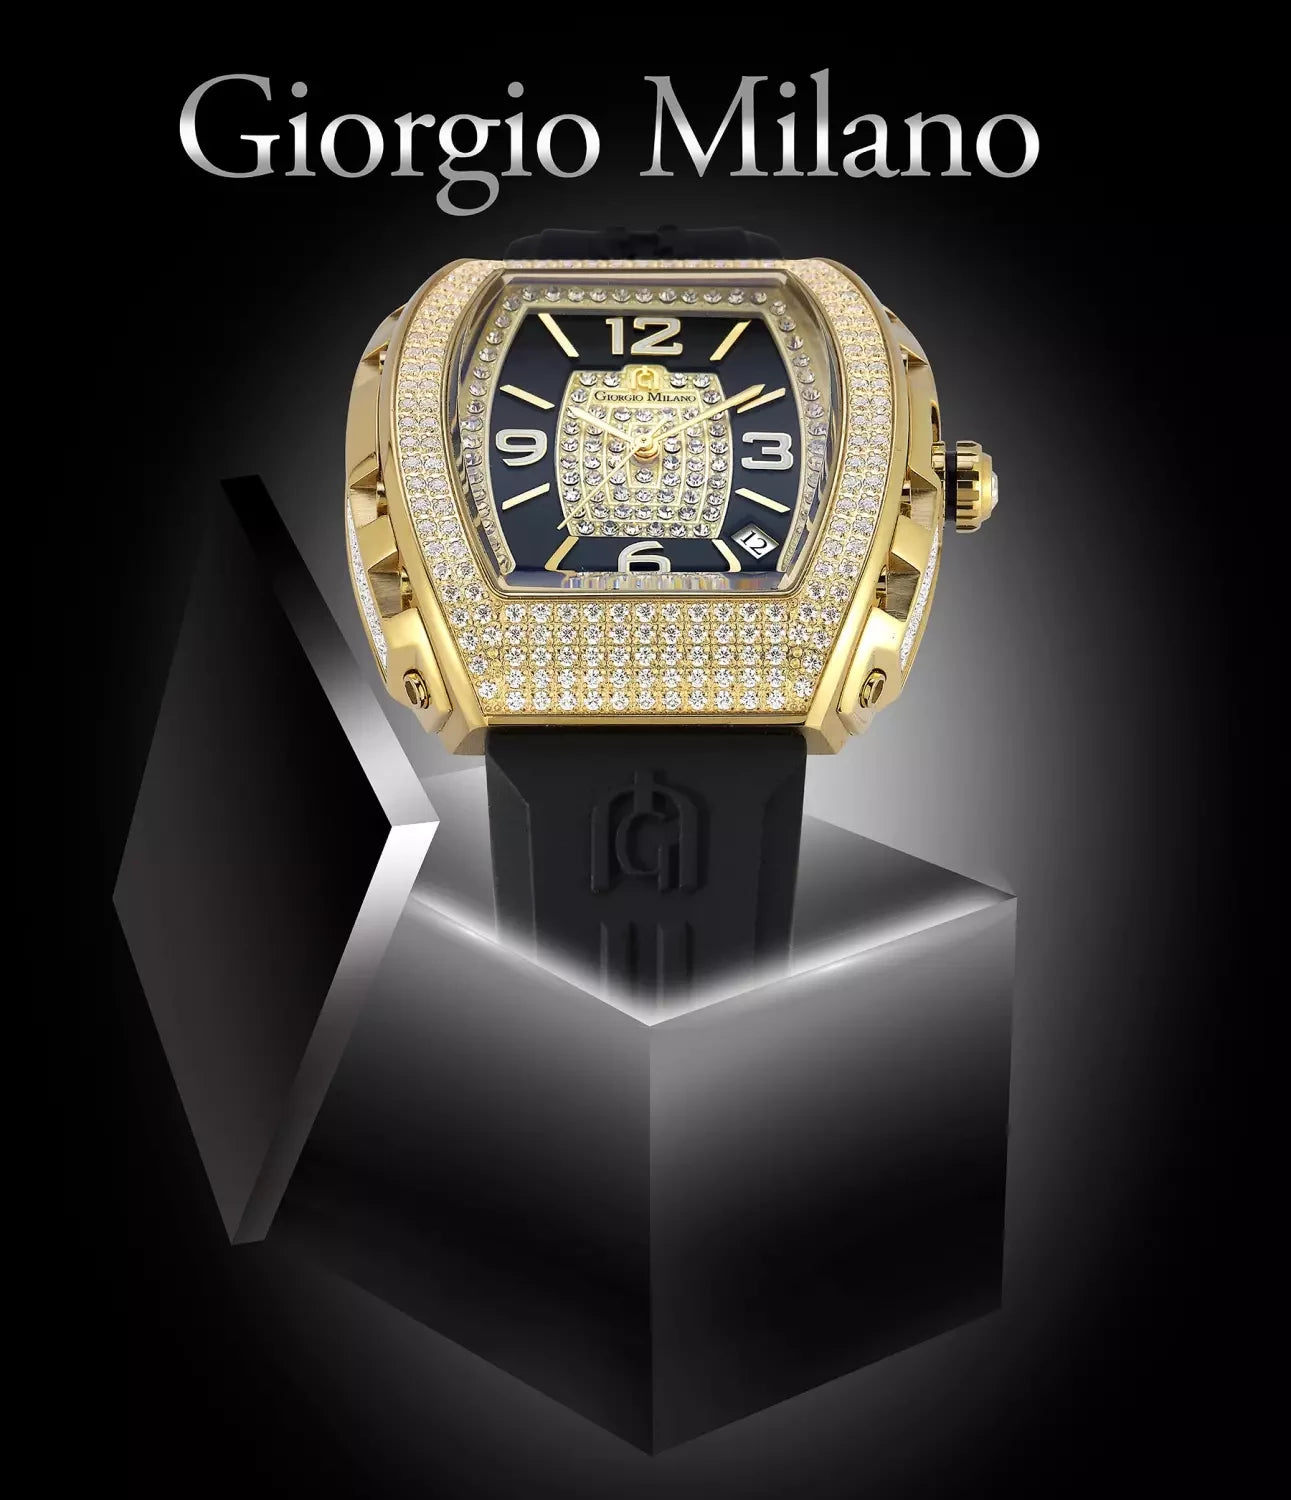 Shop Watches at Giorgio Milano